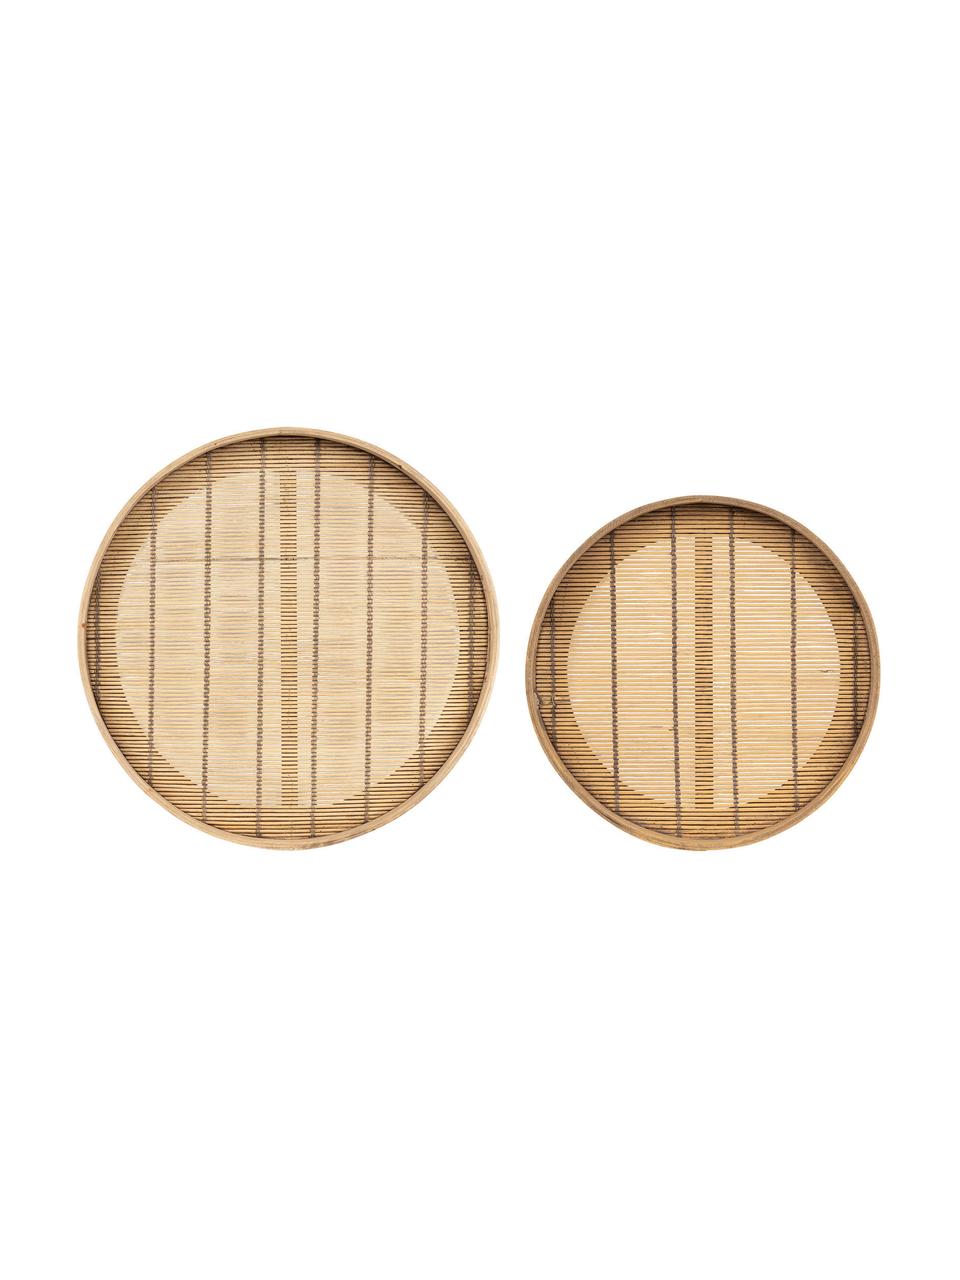 Komplet tac z drewna bambusowego Plaka, 2 elem., Drewno bambusowe, drewno jodłowe, Beżowy, Komplet z różnymi rozmiarami